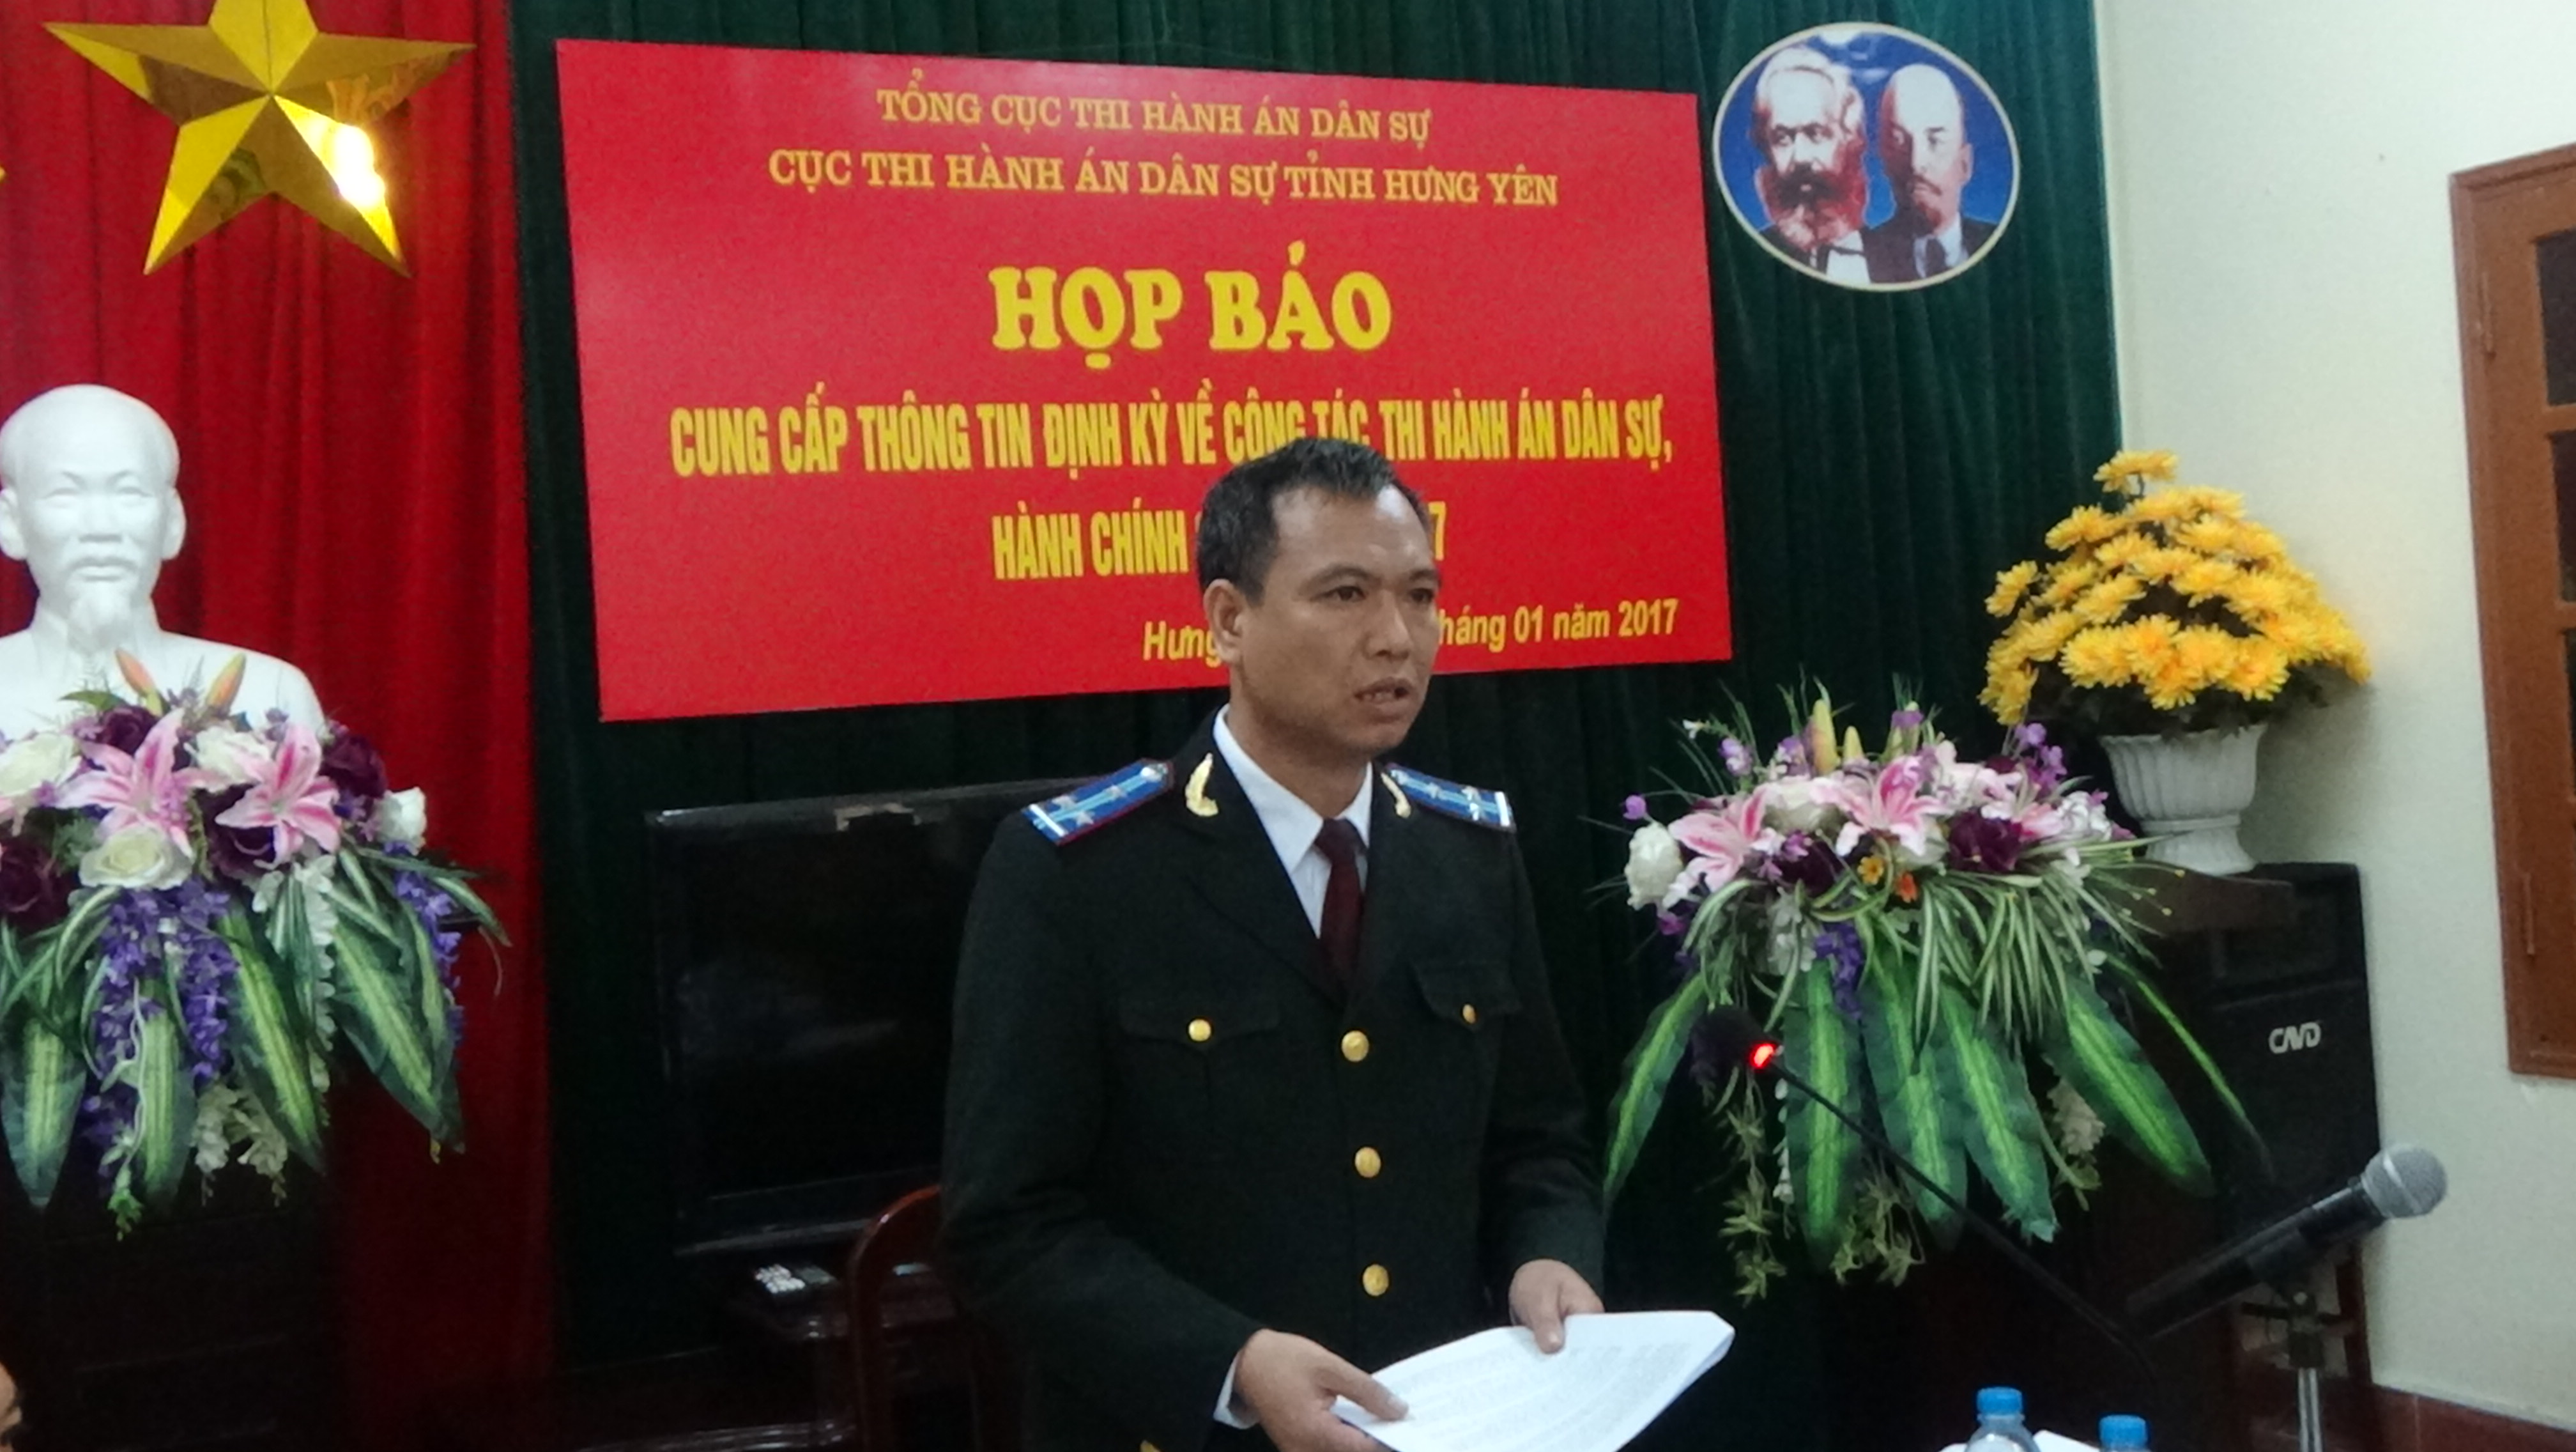 Cục Thi hành án dân sự tỉnh Hưng Yên tổ chức họp báo công tác quý I năm 2017